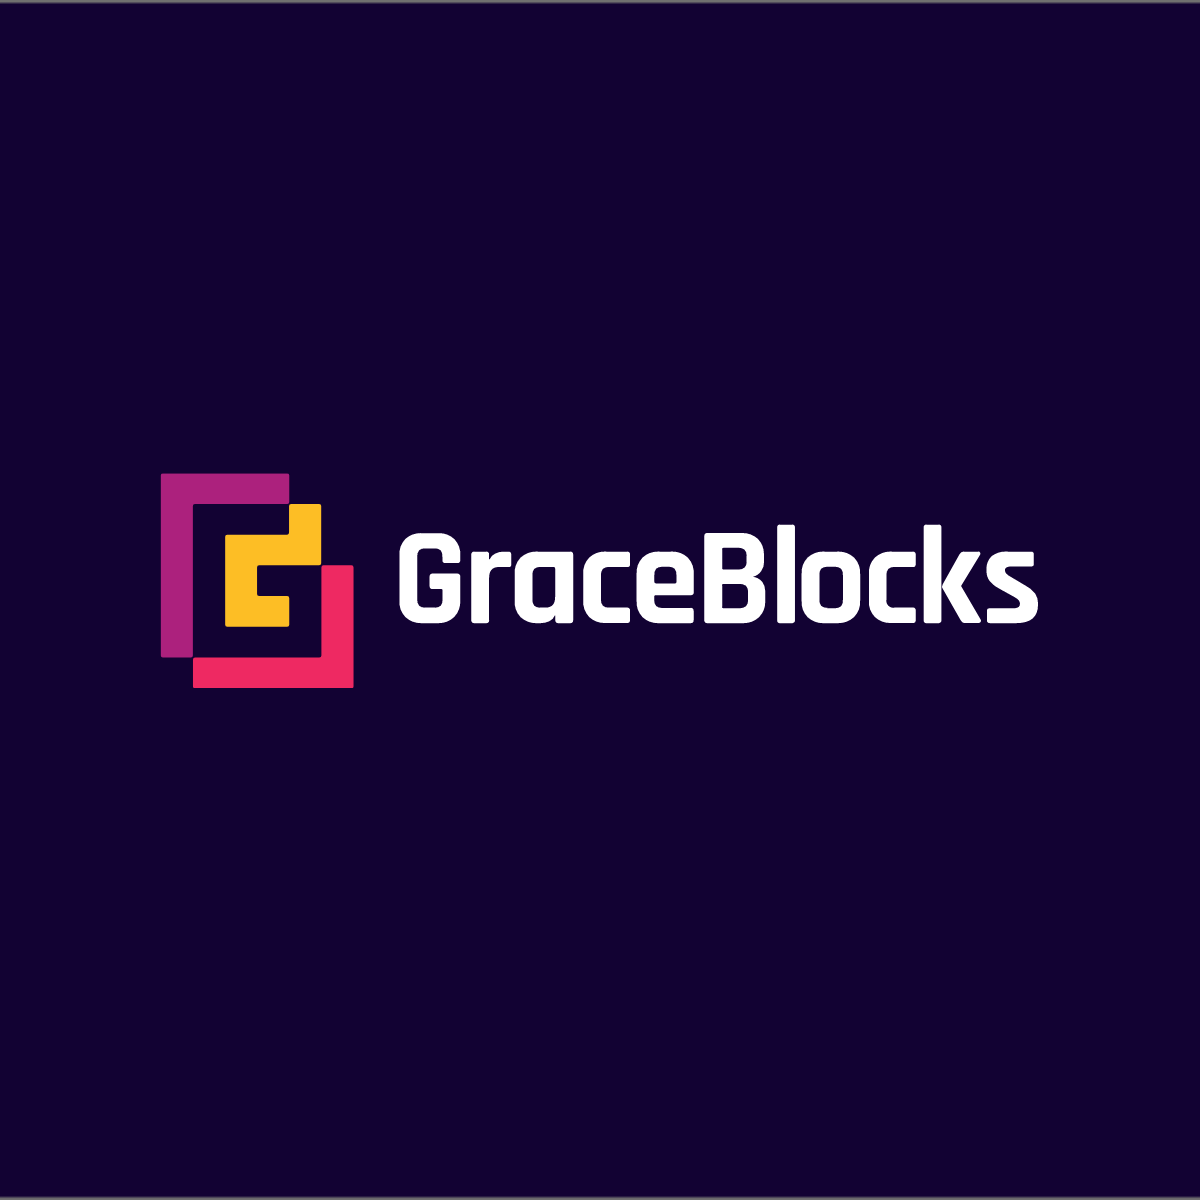 GraceBlocks_default_social_sharing_image.png